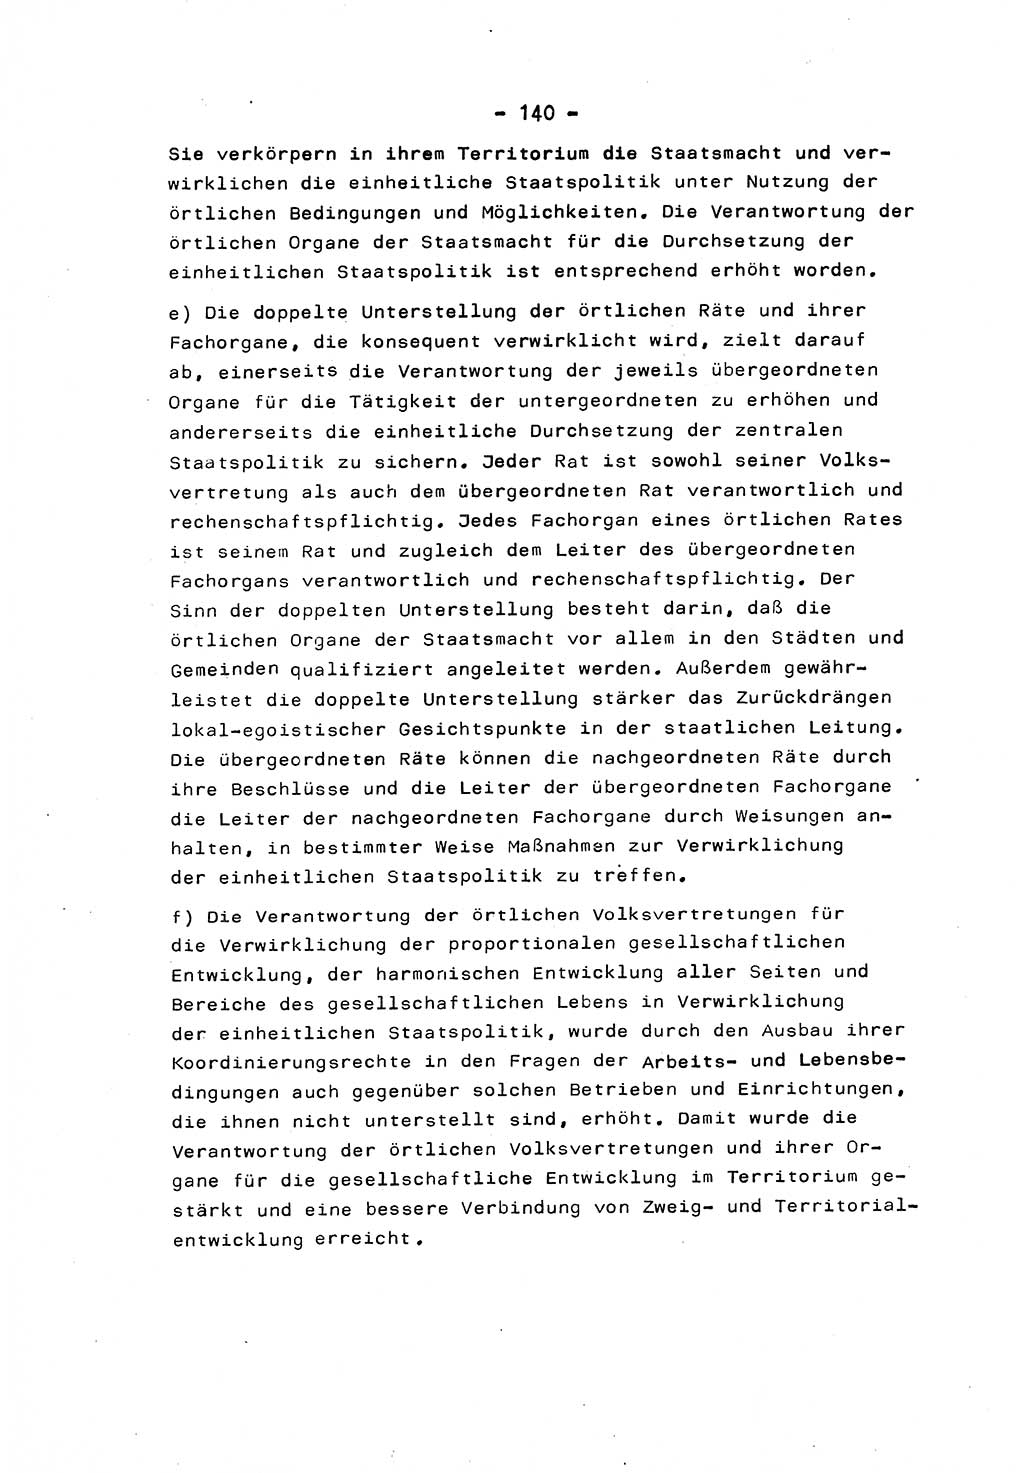 Marxistisch-leninistische Staats- und Rechtstheorie [Deutsche Demokratische Republik (DDR)] 1975, Seite 140 (ML St.-R.-Th. DDR 1975, S. 140)